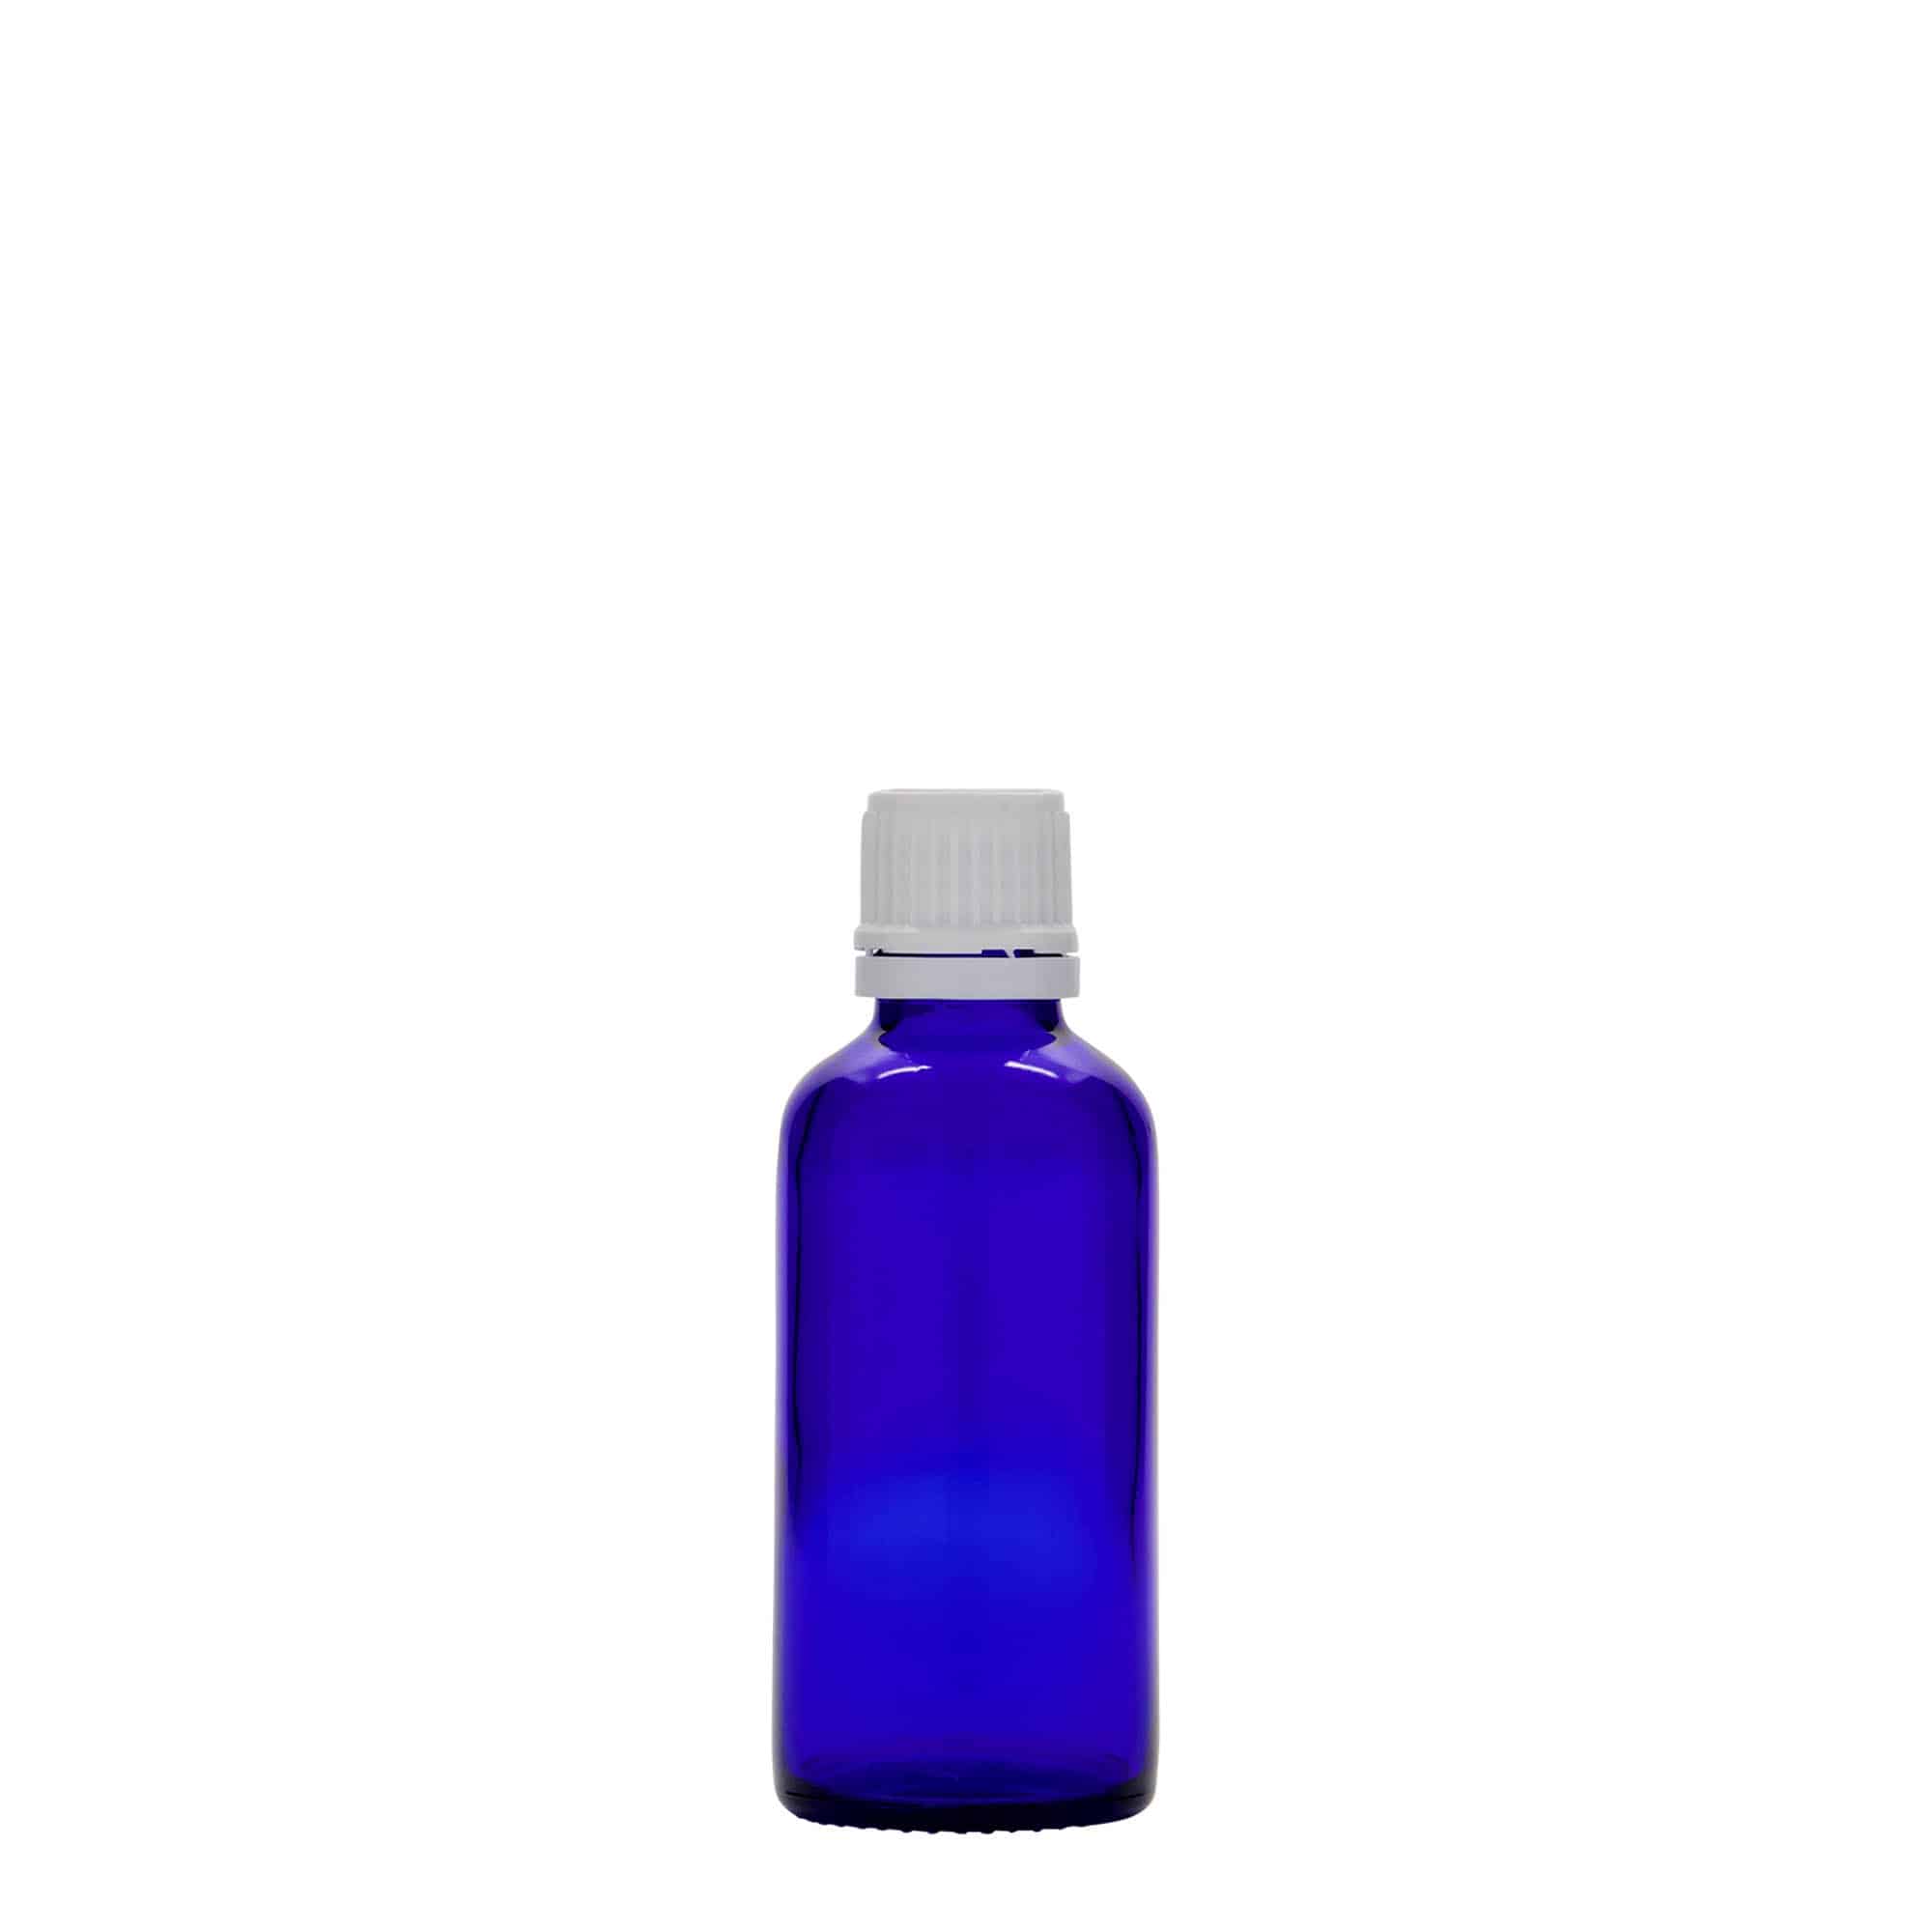 Flacon pharmaceutique 50 ml , verre, bleu roi, bouchage: DIN 18